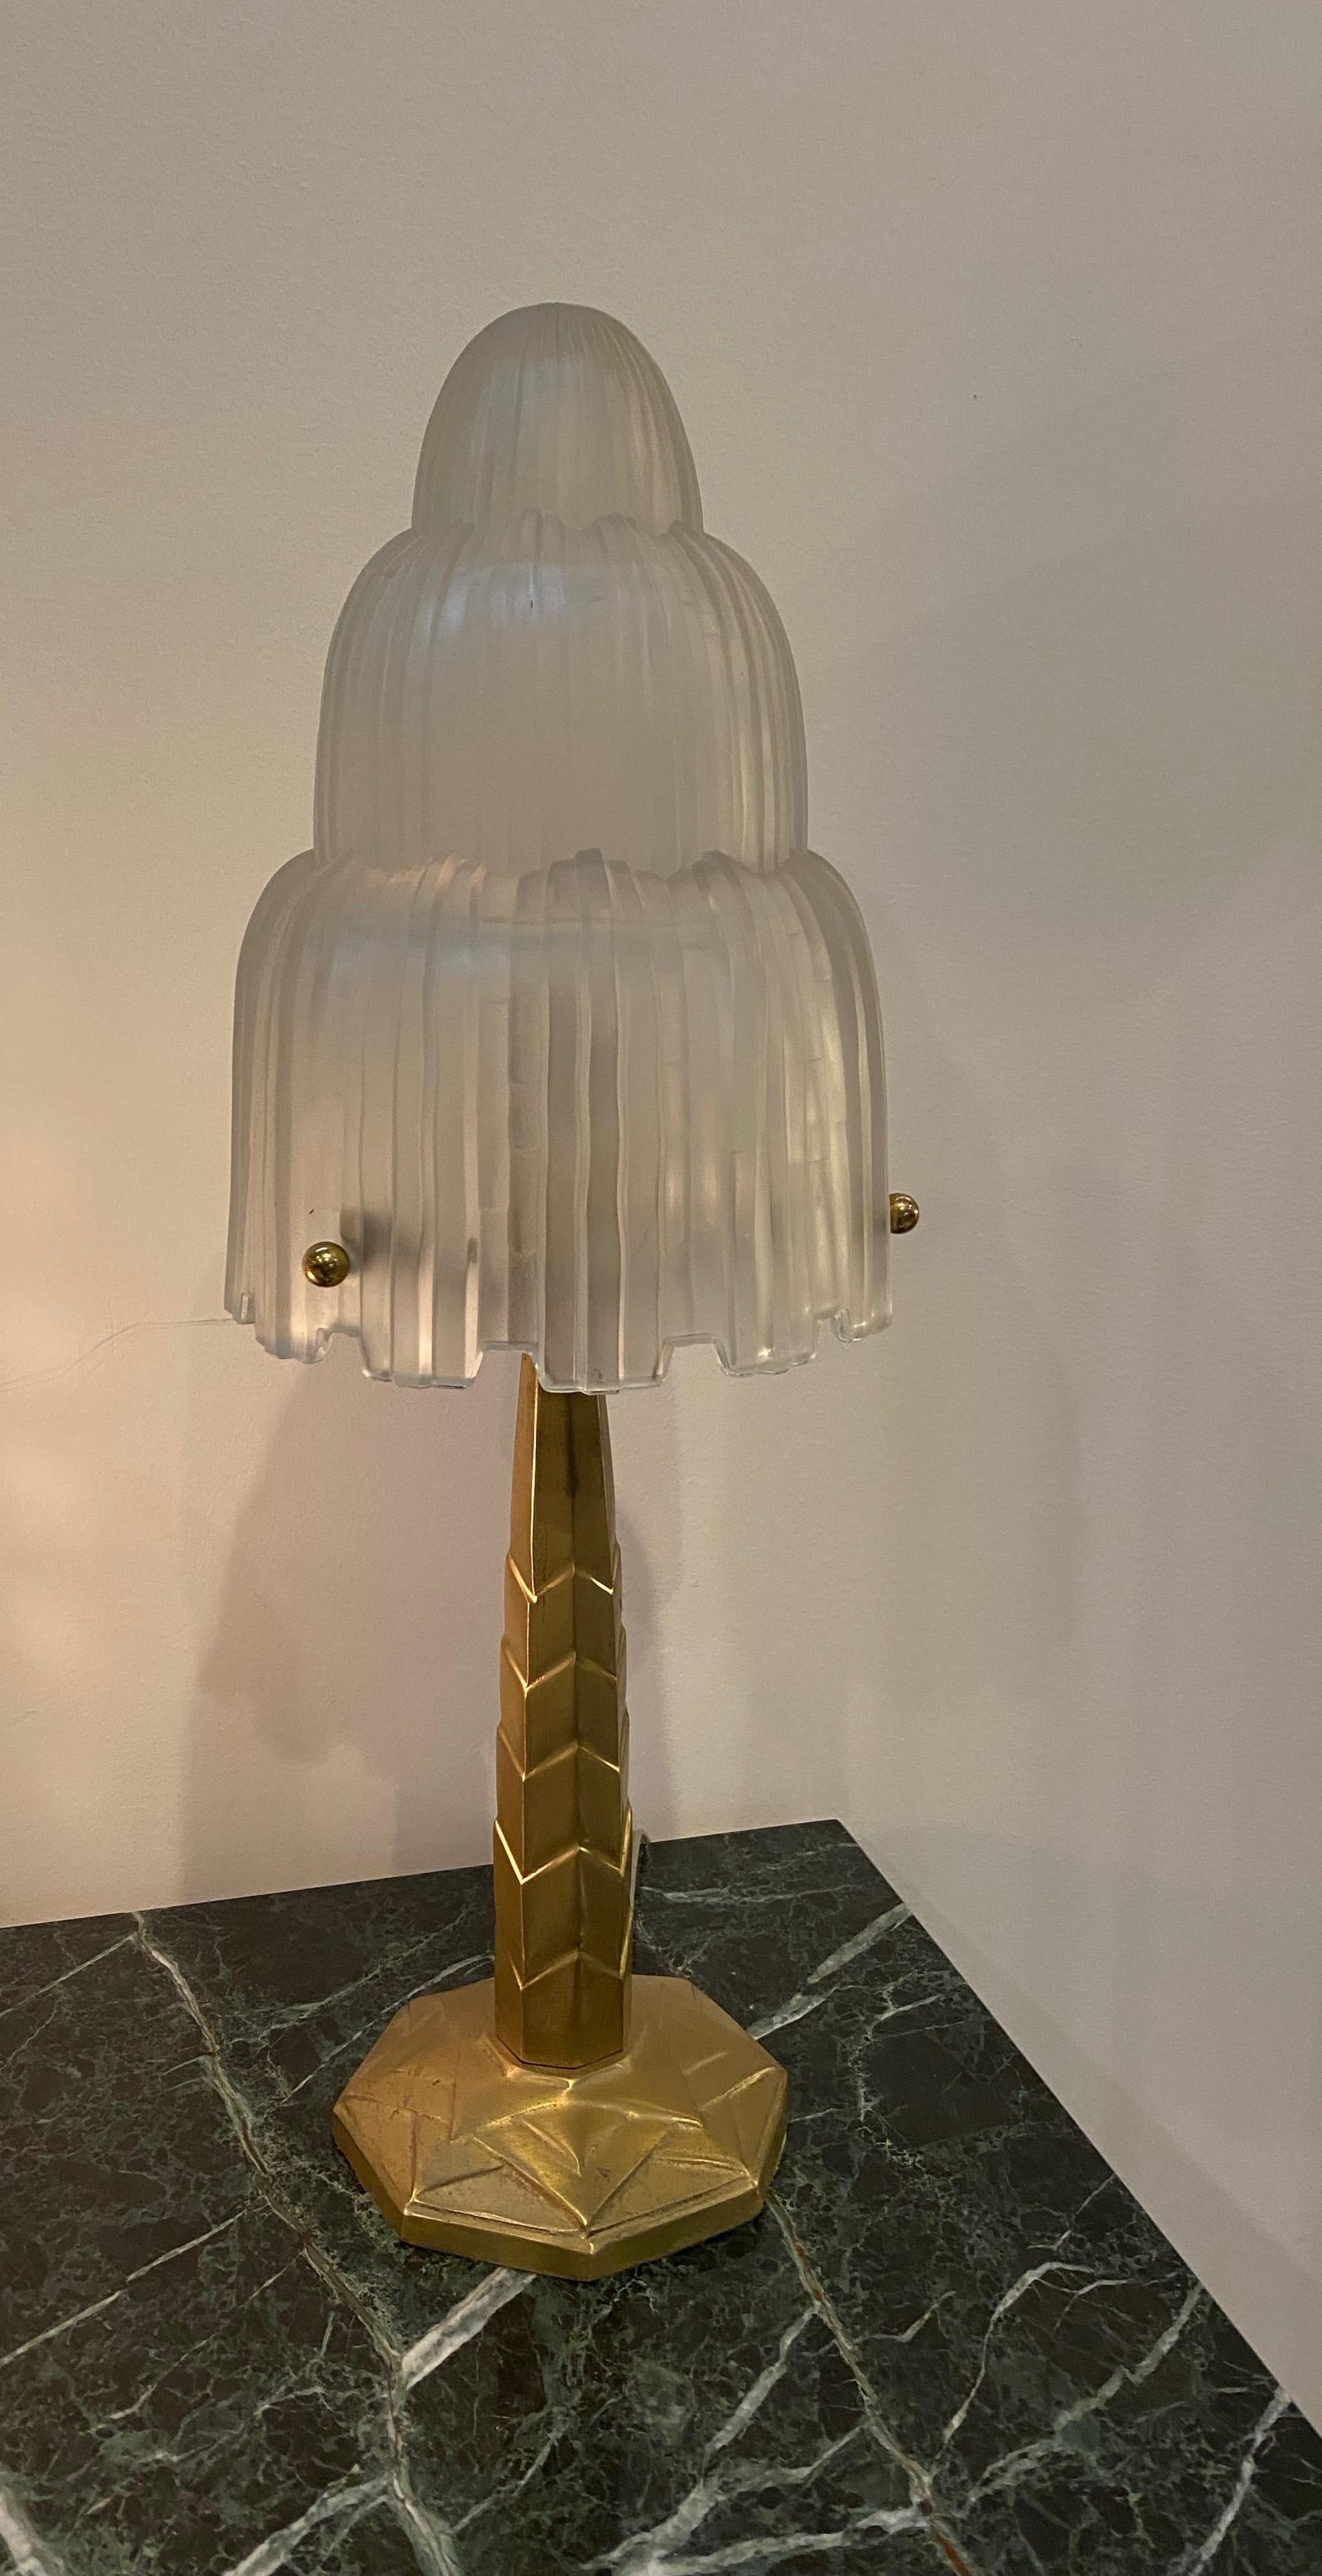 Lampe de table unique de style Art déco français créée par le célèbre artiste français Marius Ernest Sabino. L'abat-jour est en verre dépoli transparent avec des détails polis appelés 